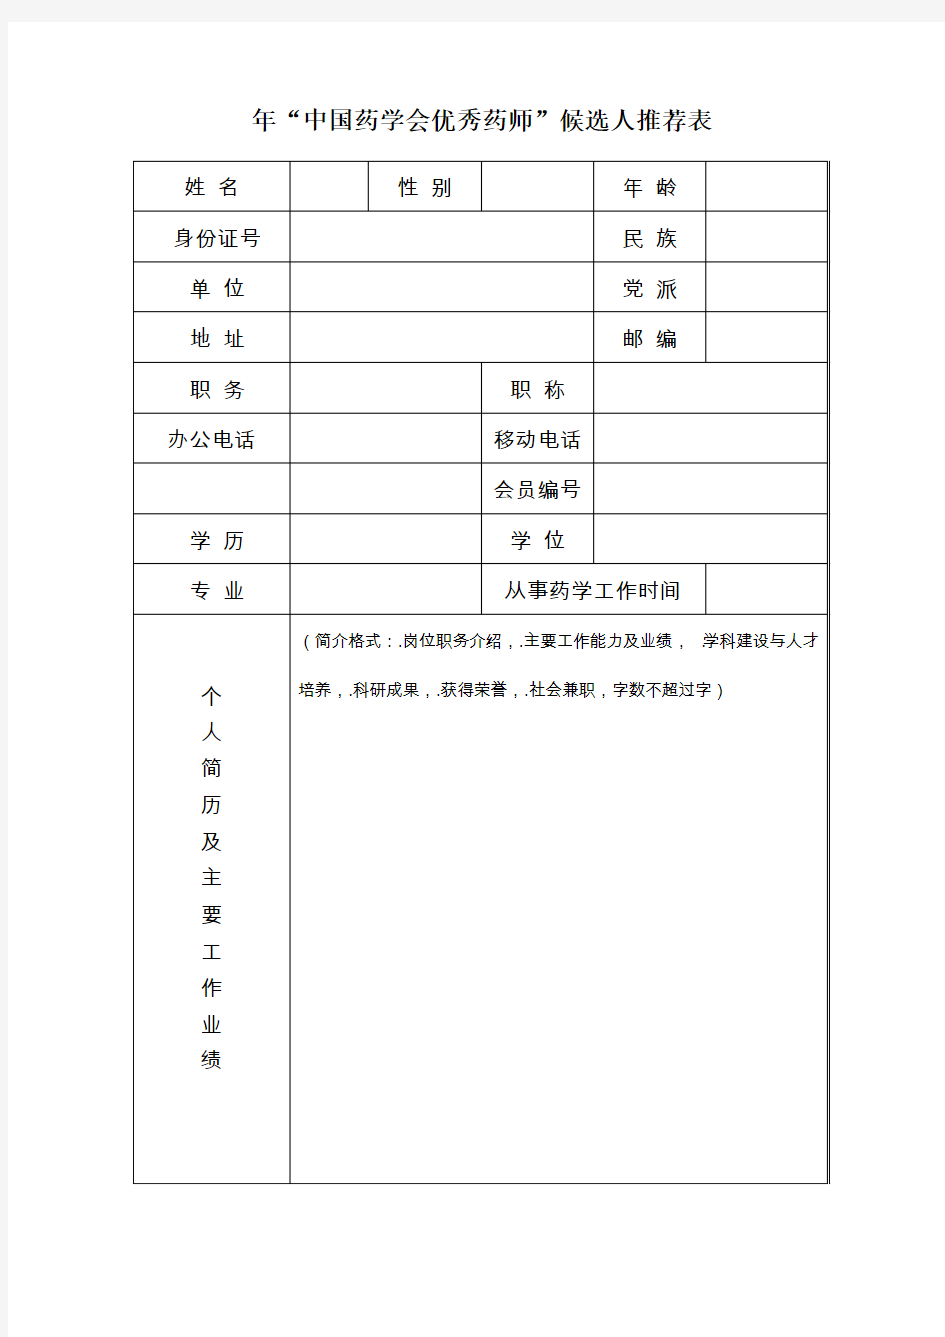 2019年中国药学会优秀药师候选人推荐表